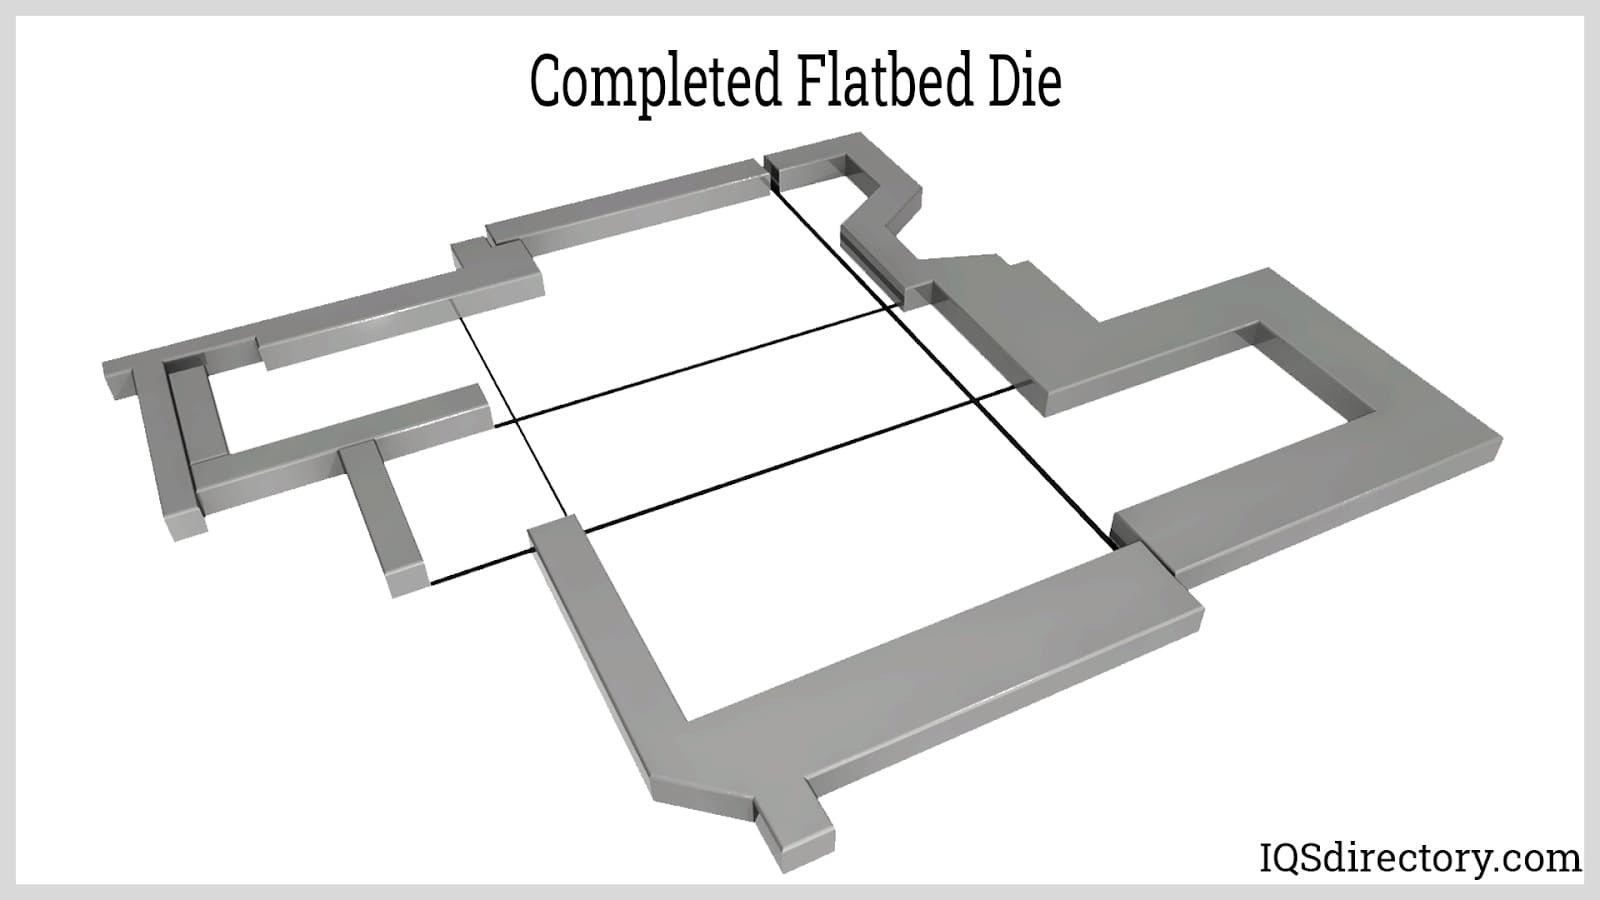 Complete Flatbed Die